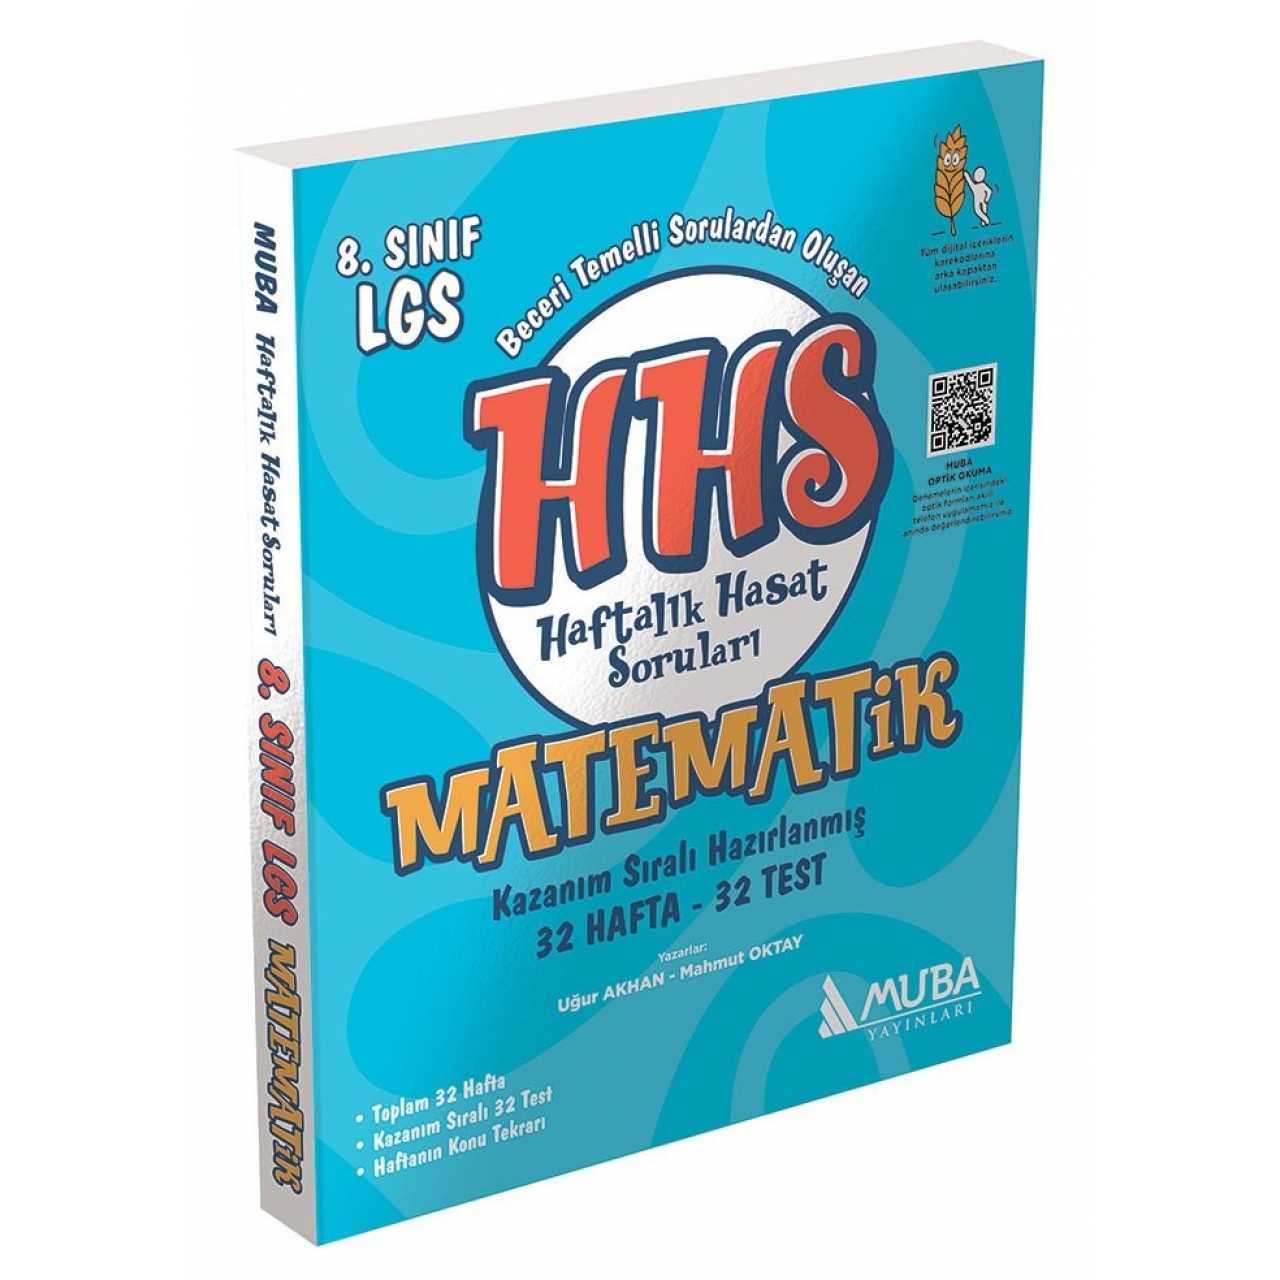 8. Sınıf LGS Matematik HHS Haftalık Hasat Soruları Muba Yayınları